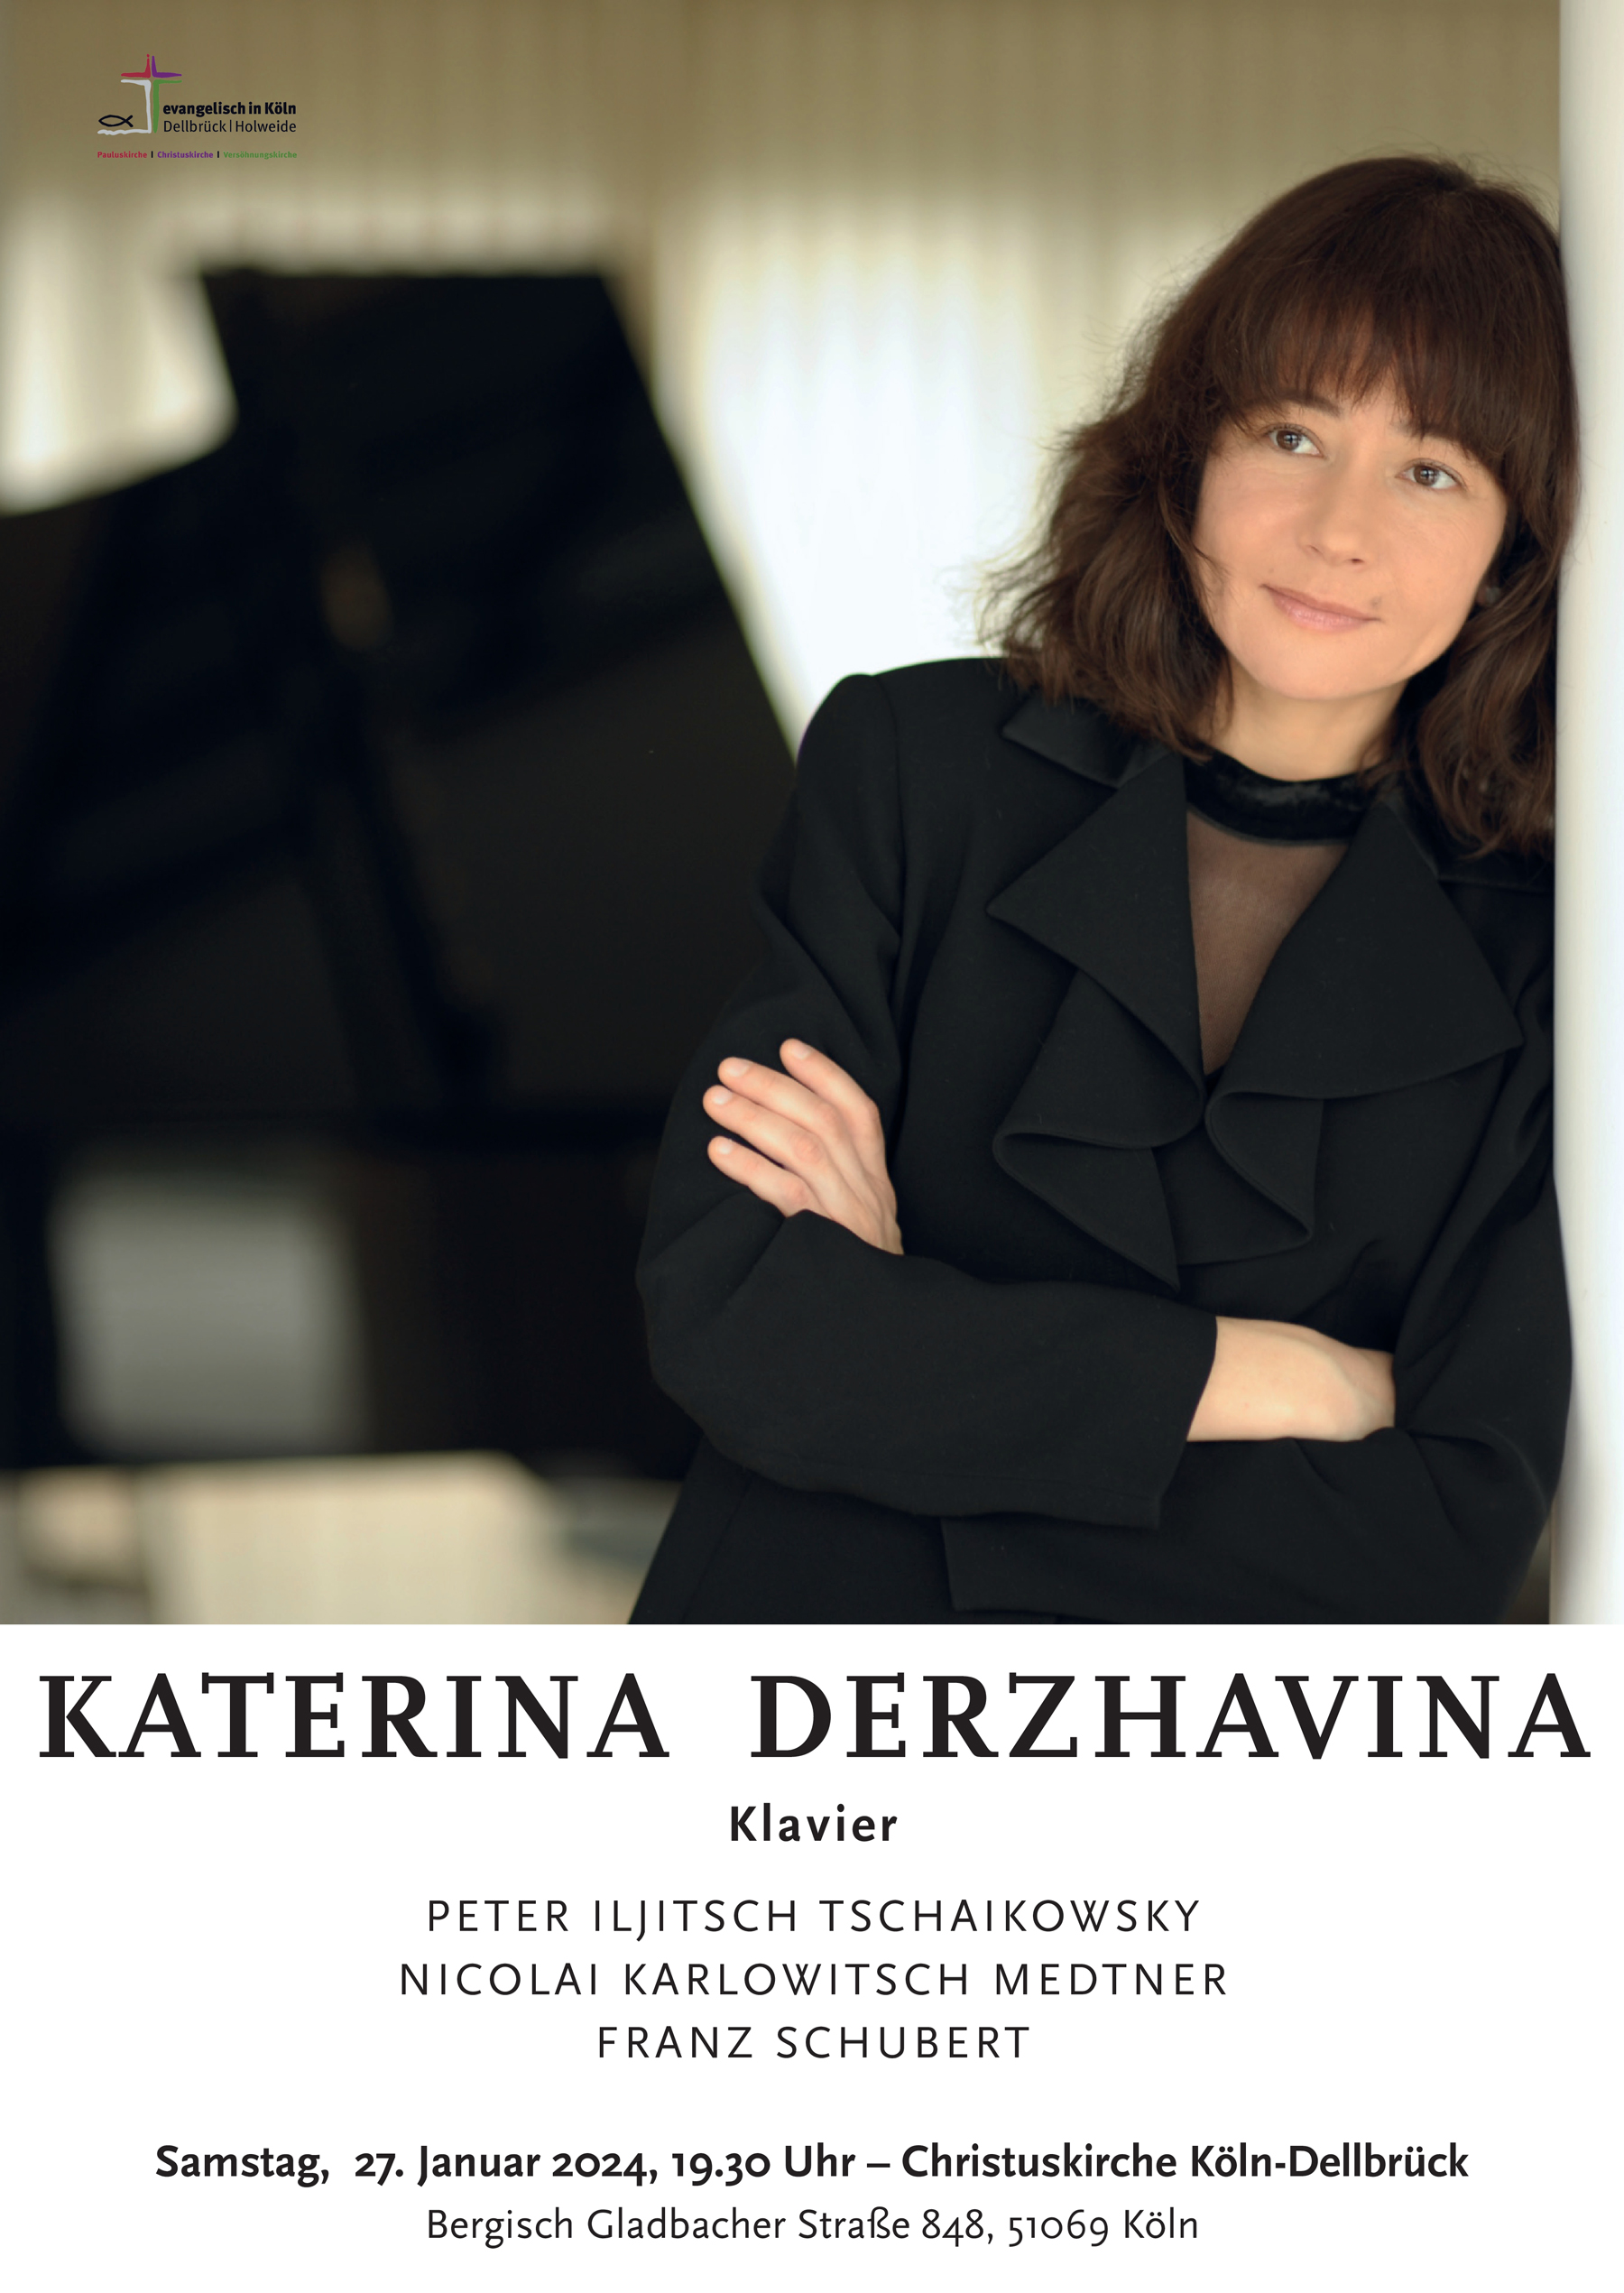 Mehr über den Artikel erfahren Klavierabend mit Katerina Derzhavina